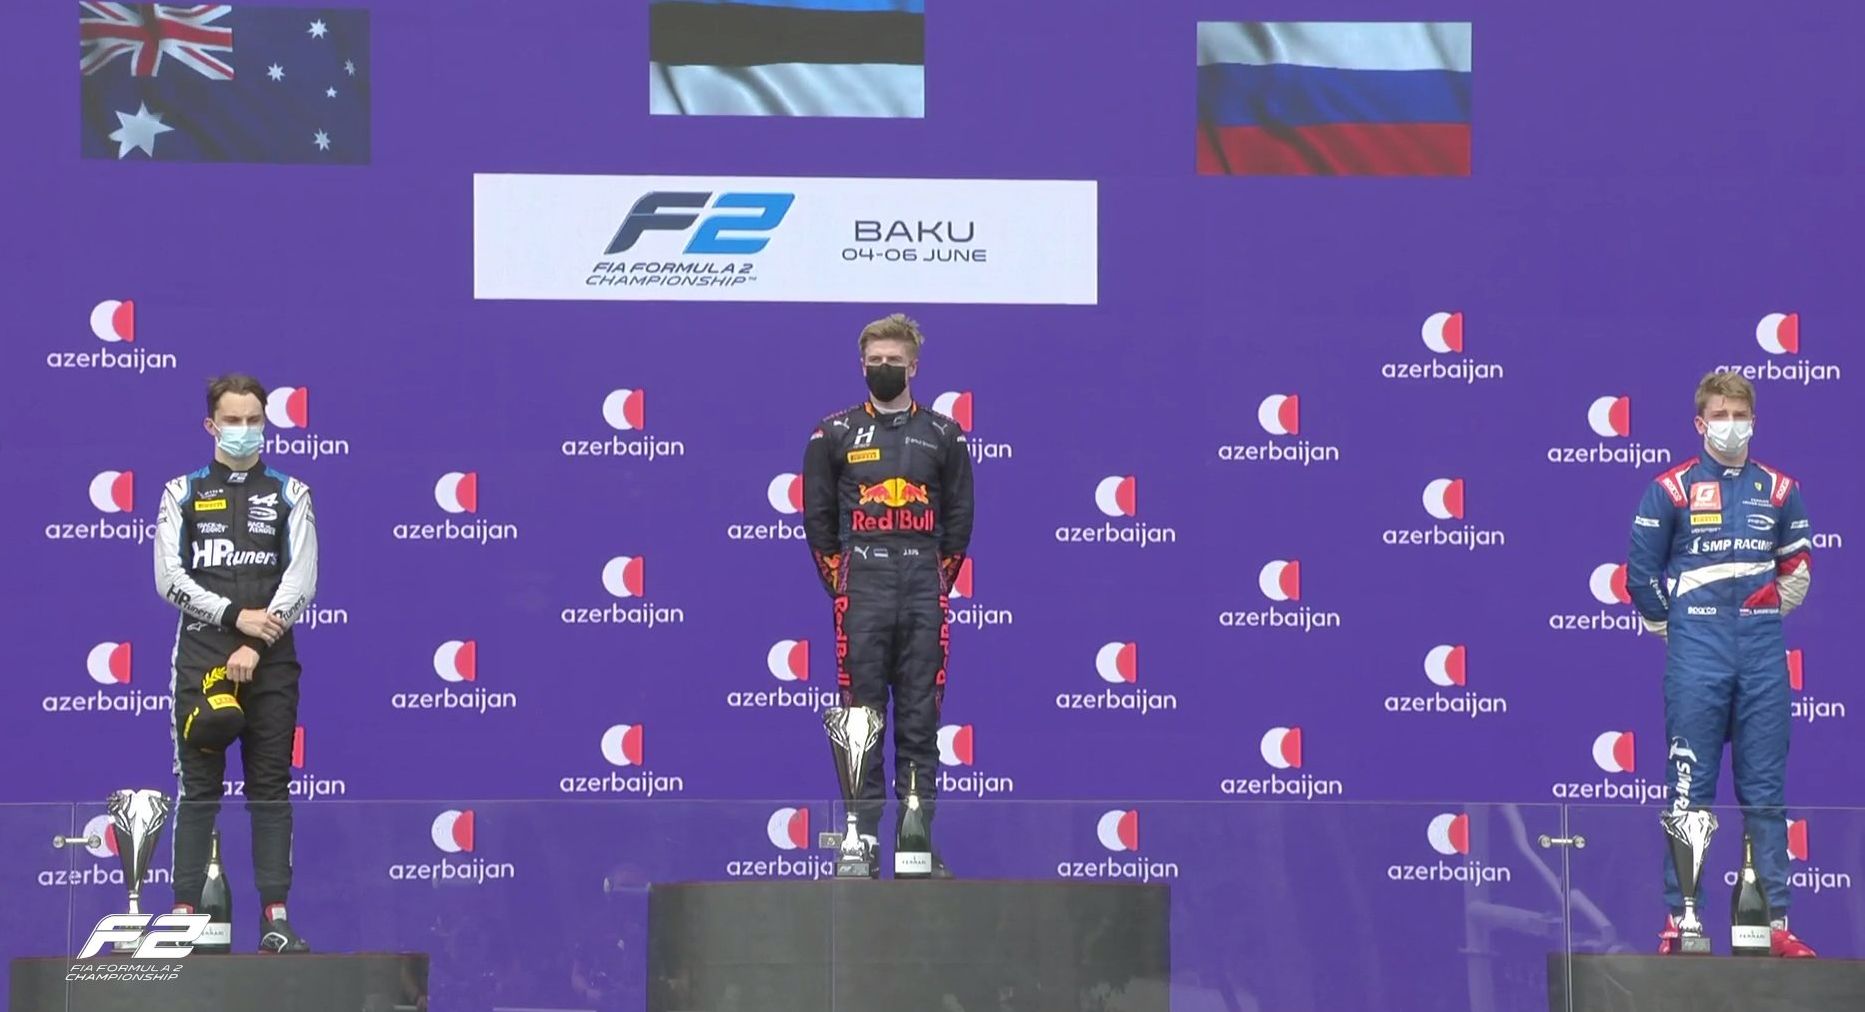 El podio de la F2 en Bakú este domingo